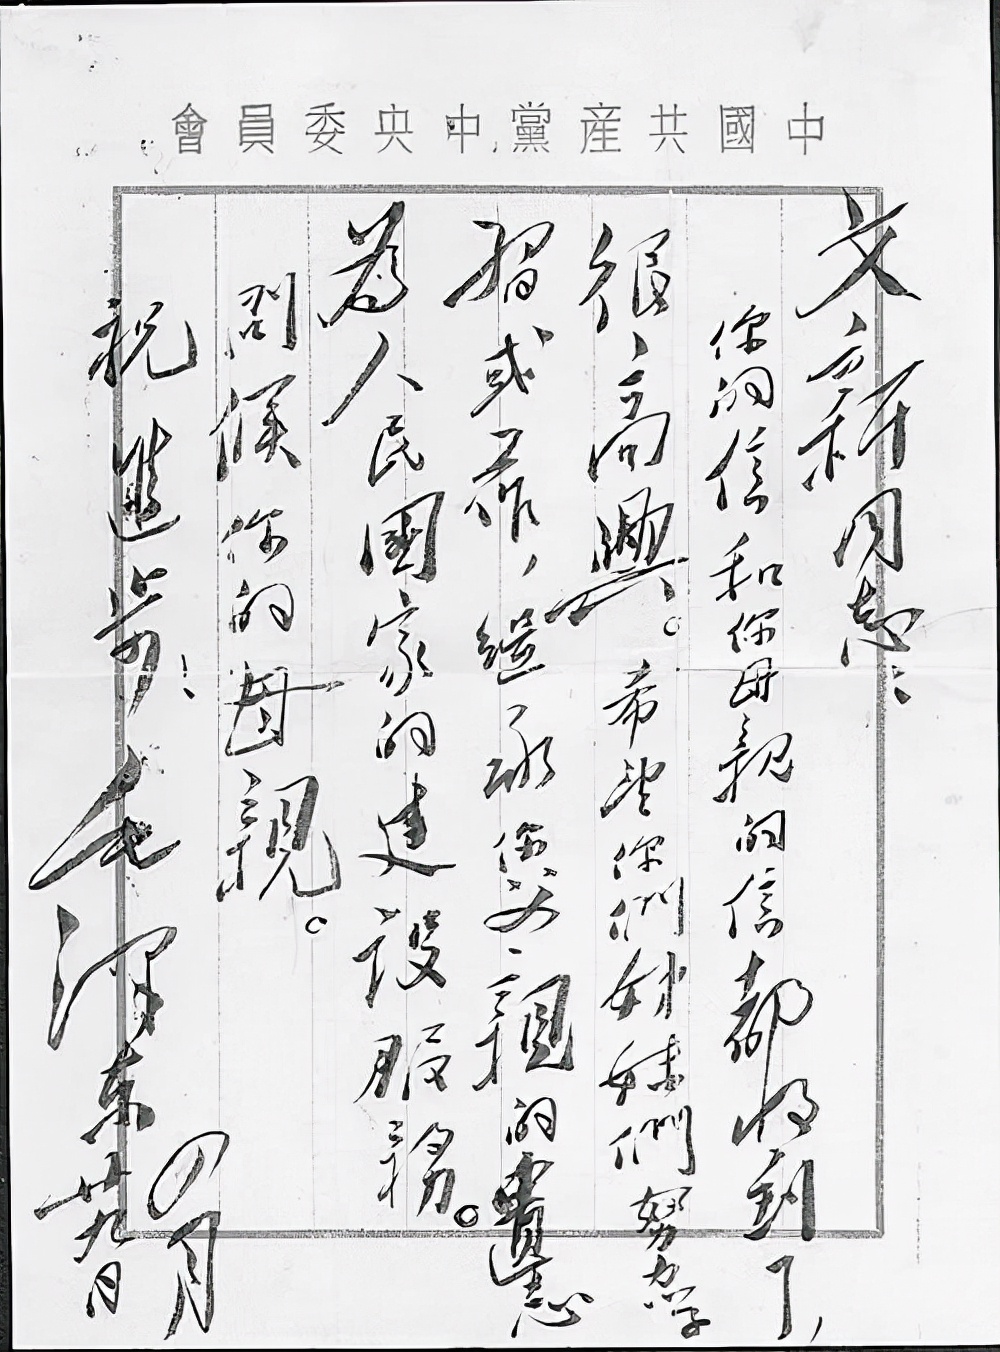 校徽上的“武汉大学”，是毛主席专门写给她